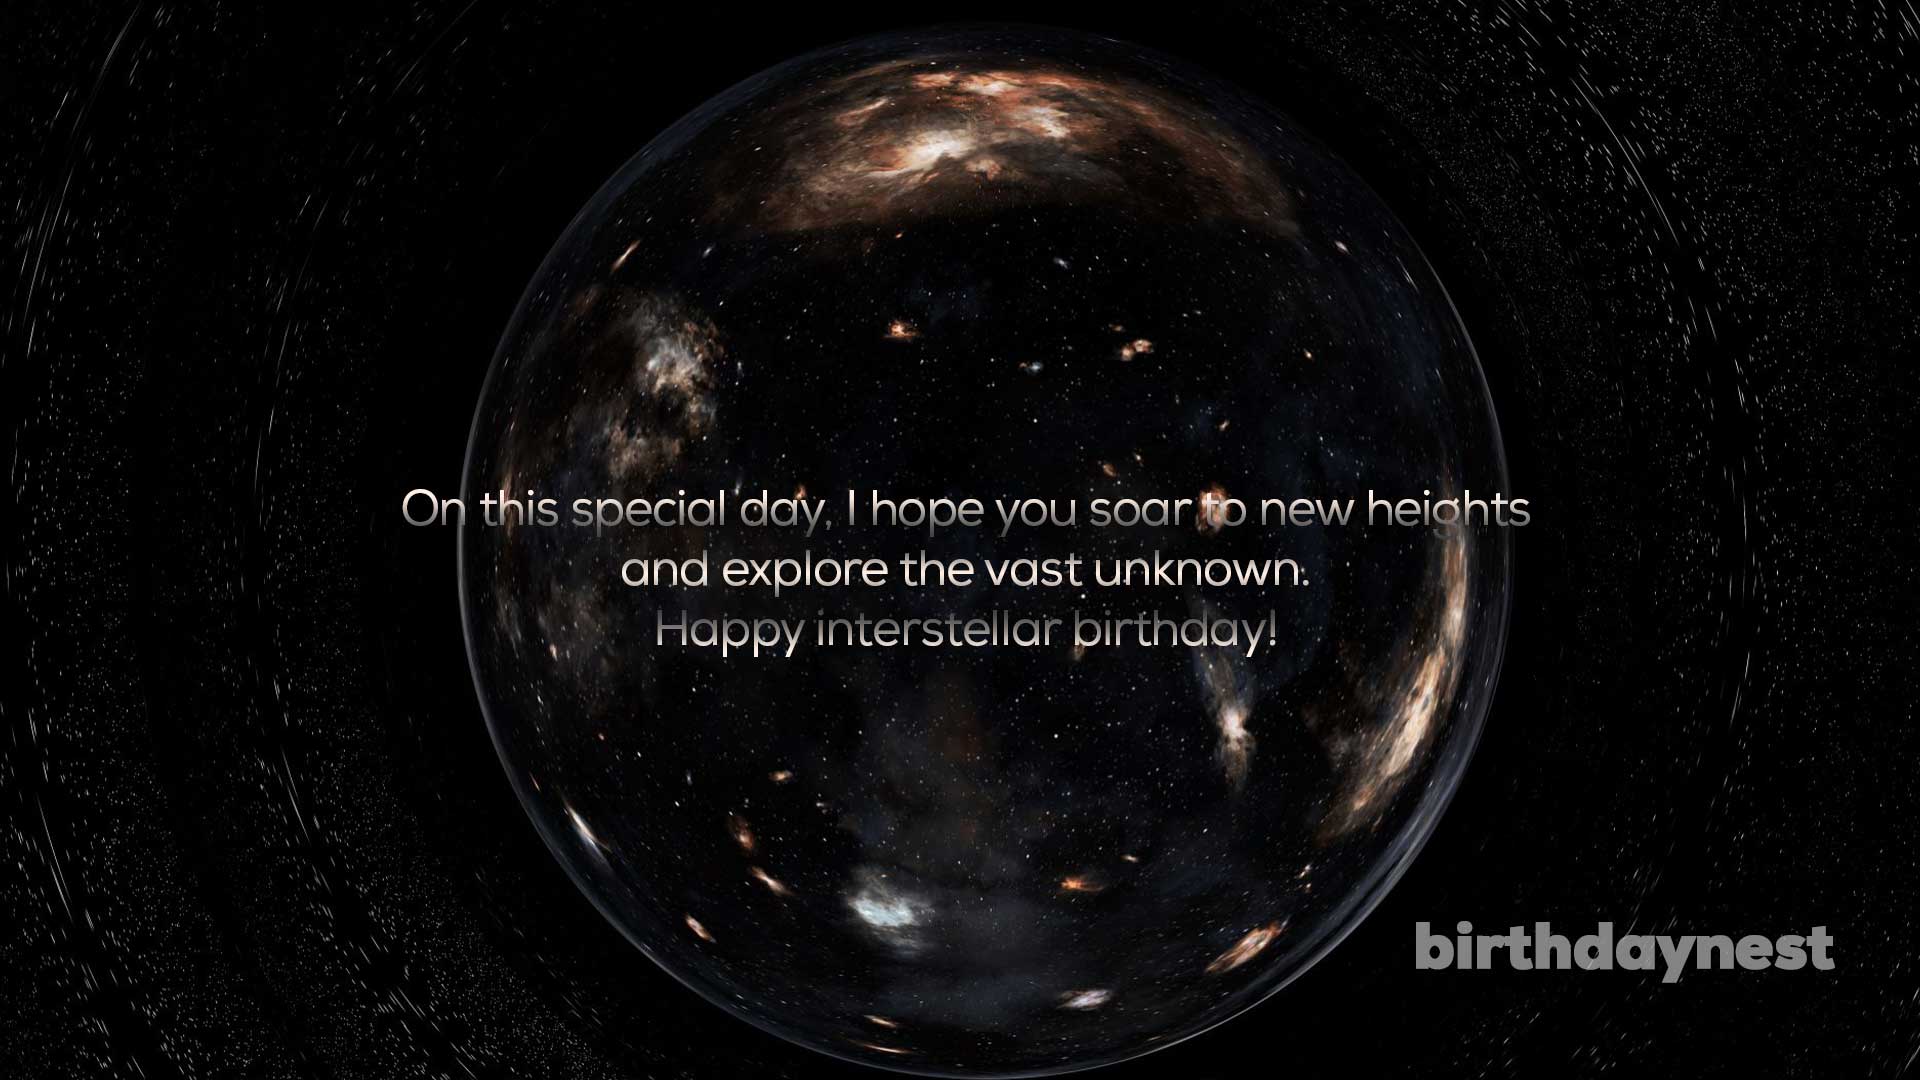 Interstellar Birthday Wishes